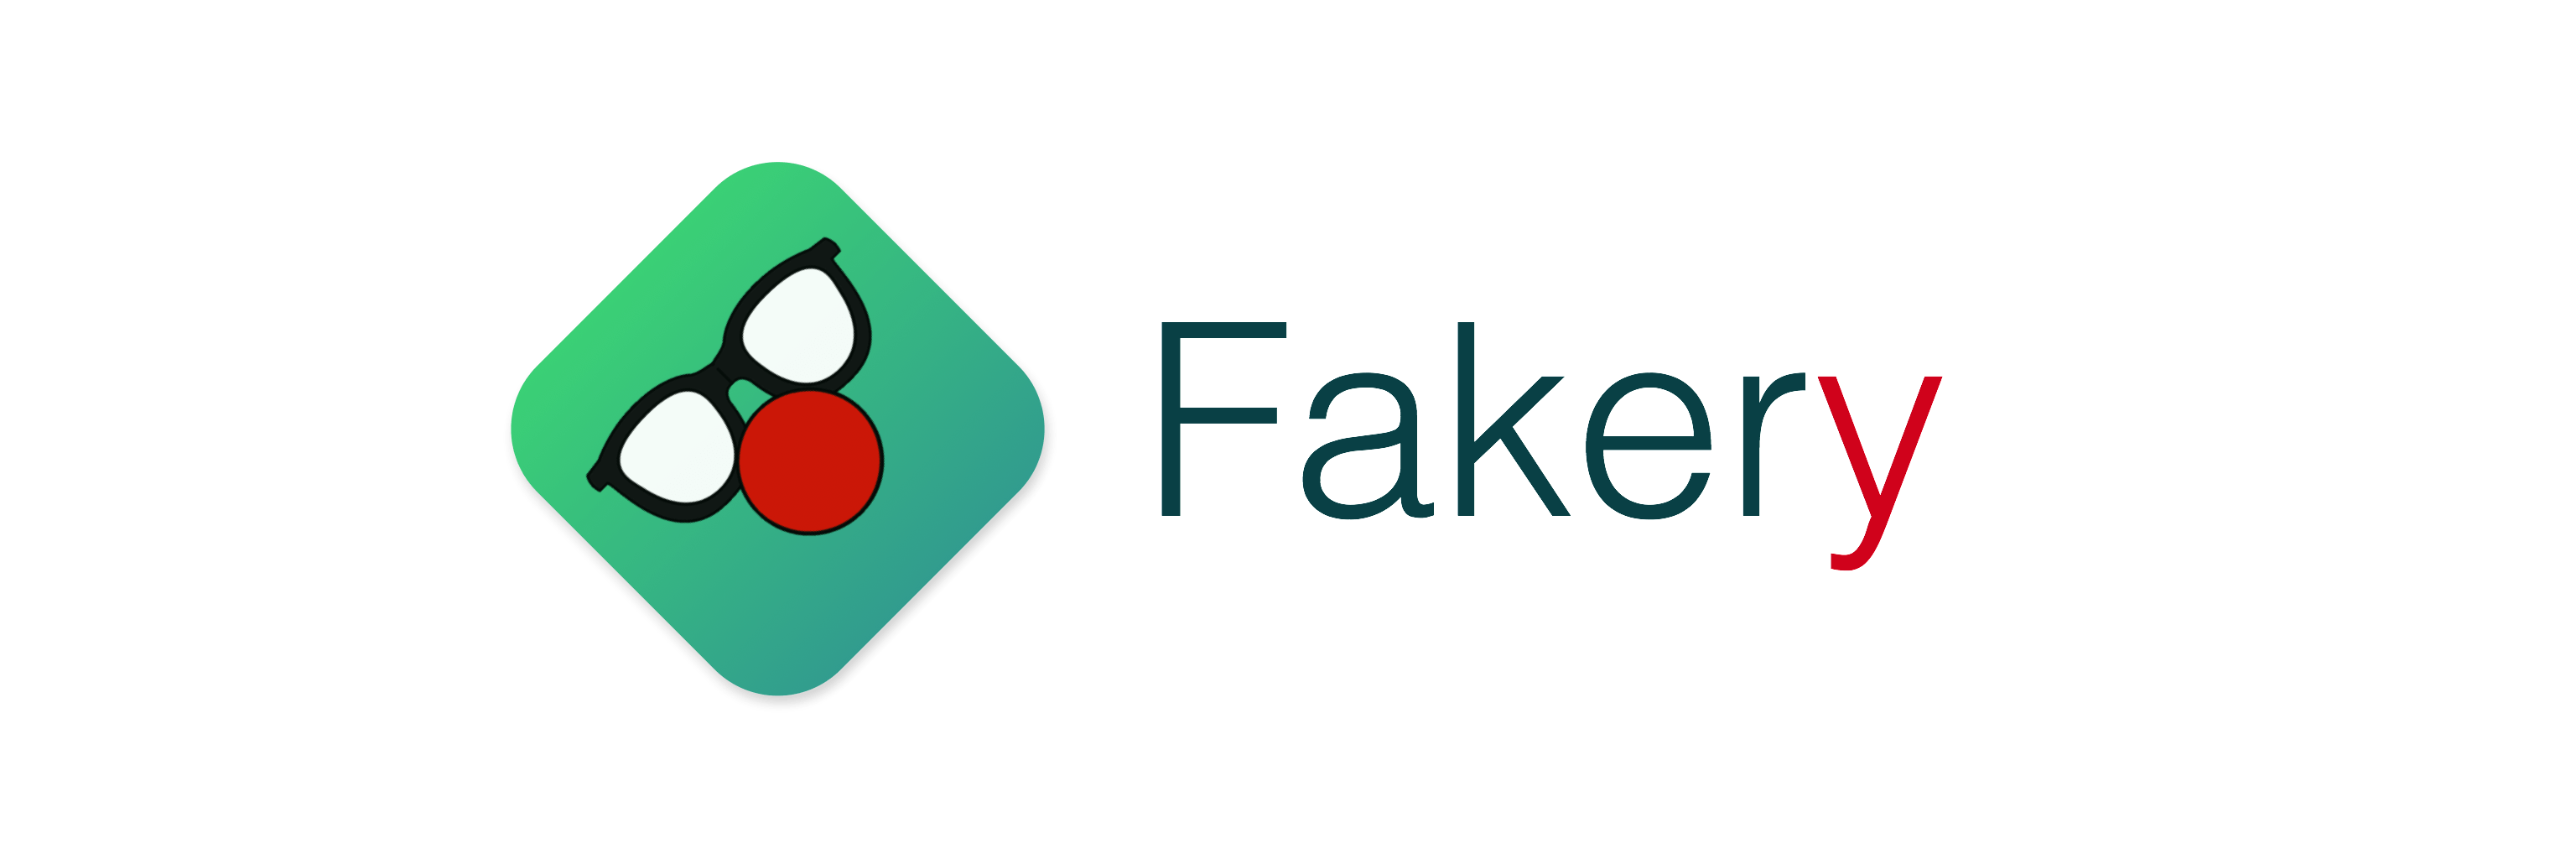 Fake Company Logo - Fakery Reference